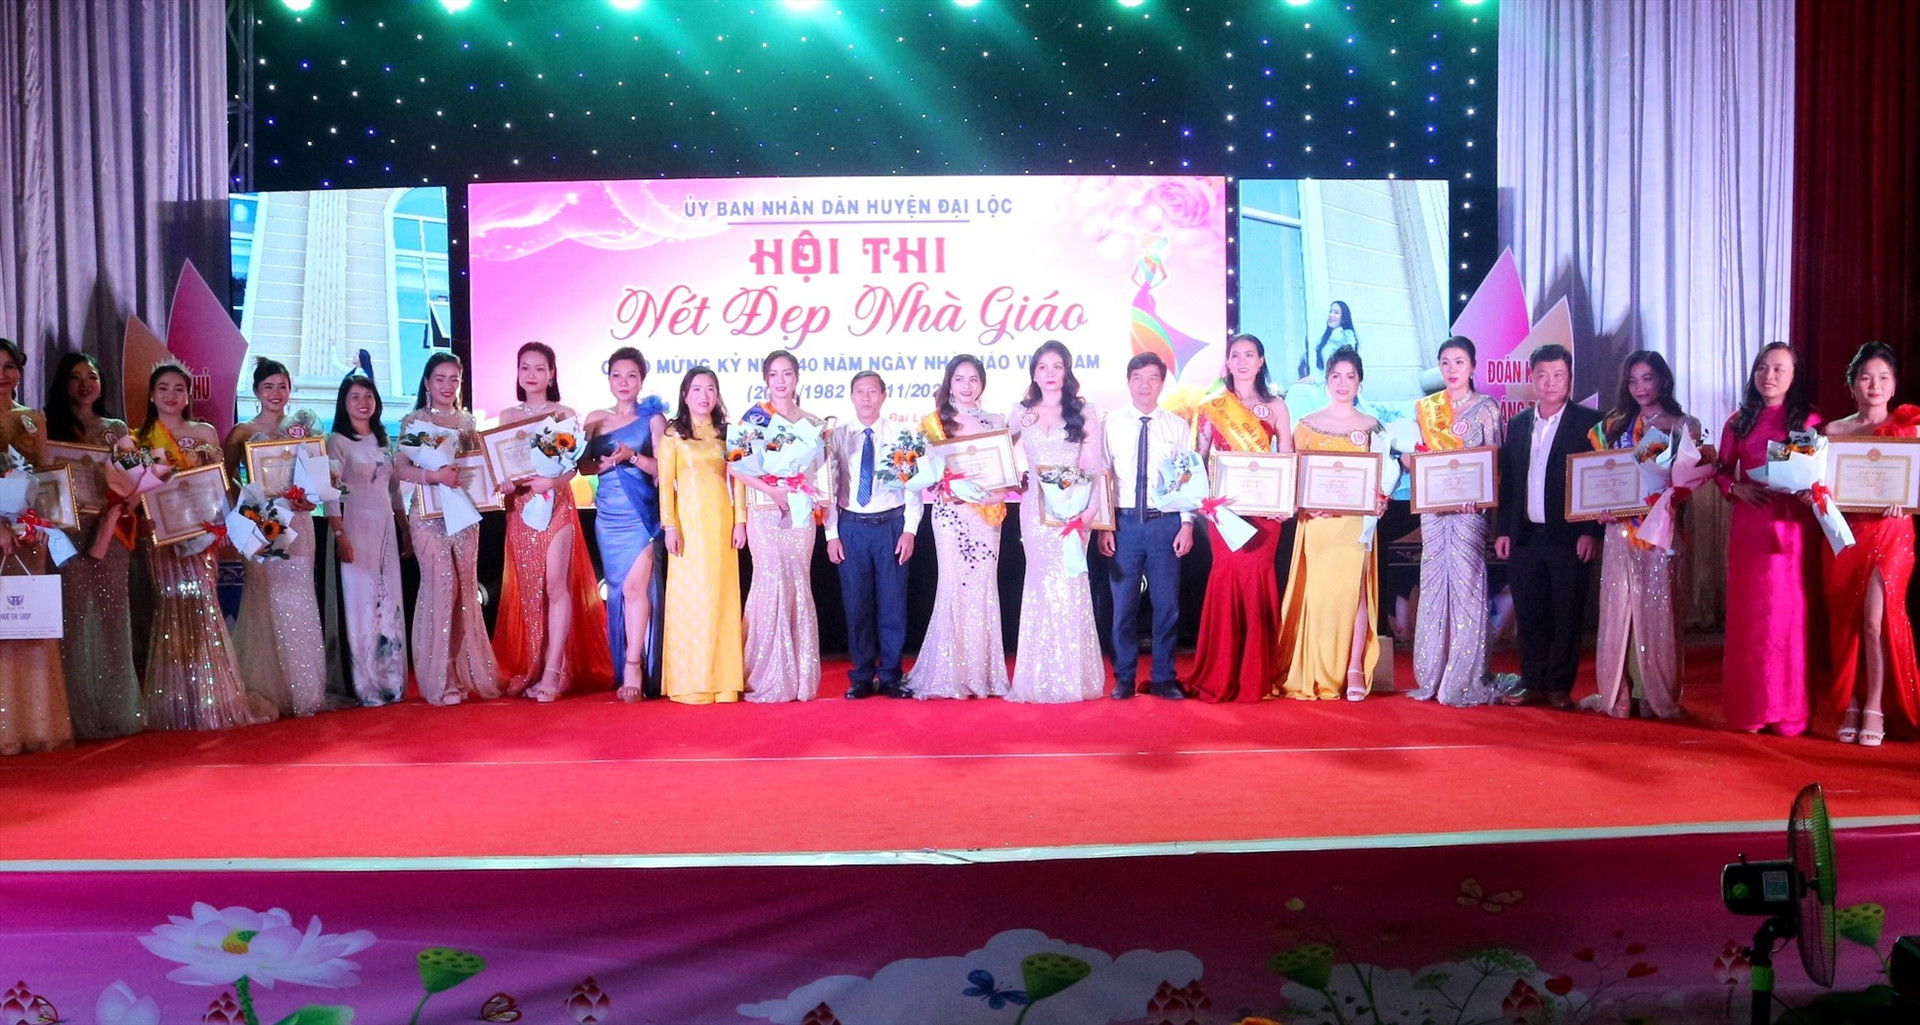 Trao giải hội thi “Nét đẹp nhà giáo” được tổ chức nhân kỷ niệm 40 năm ngày Nhà giáo Việt Nam. Ảnh: T.C.T